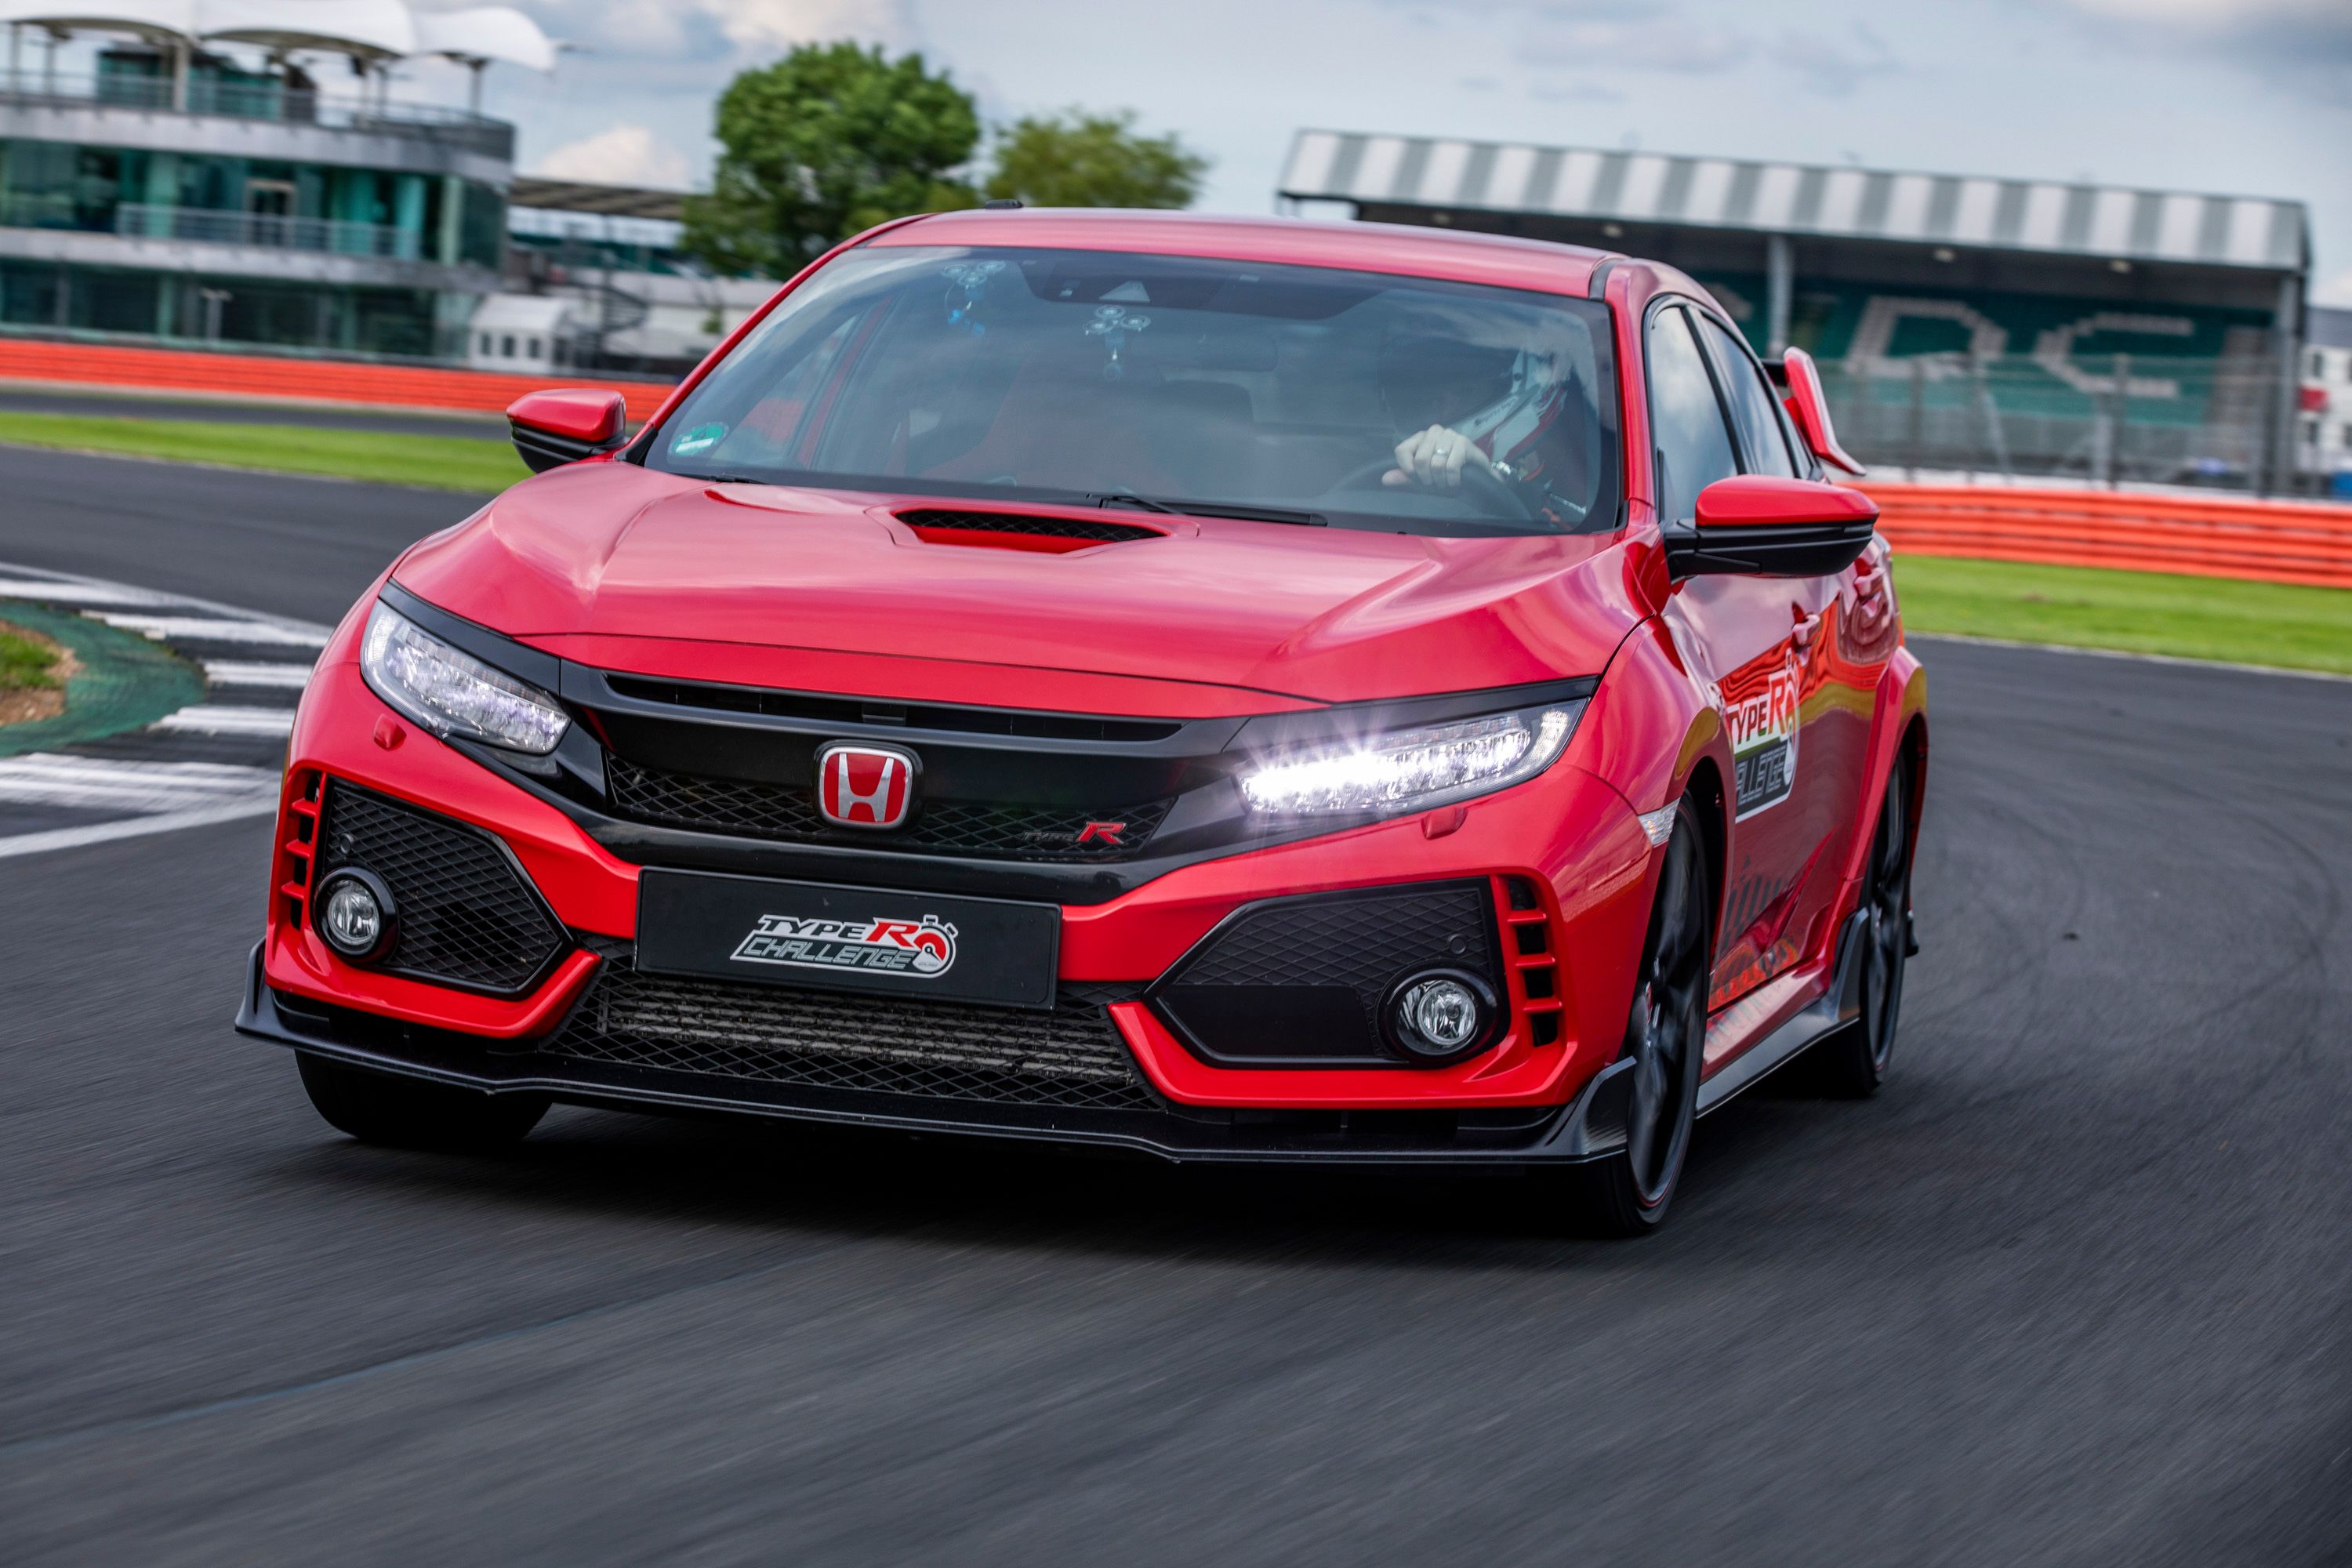 Honda Civic Type R beats its own lap record at Spa